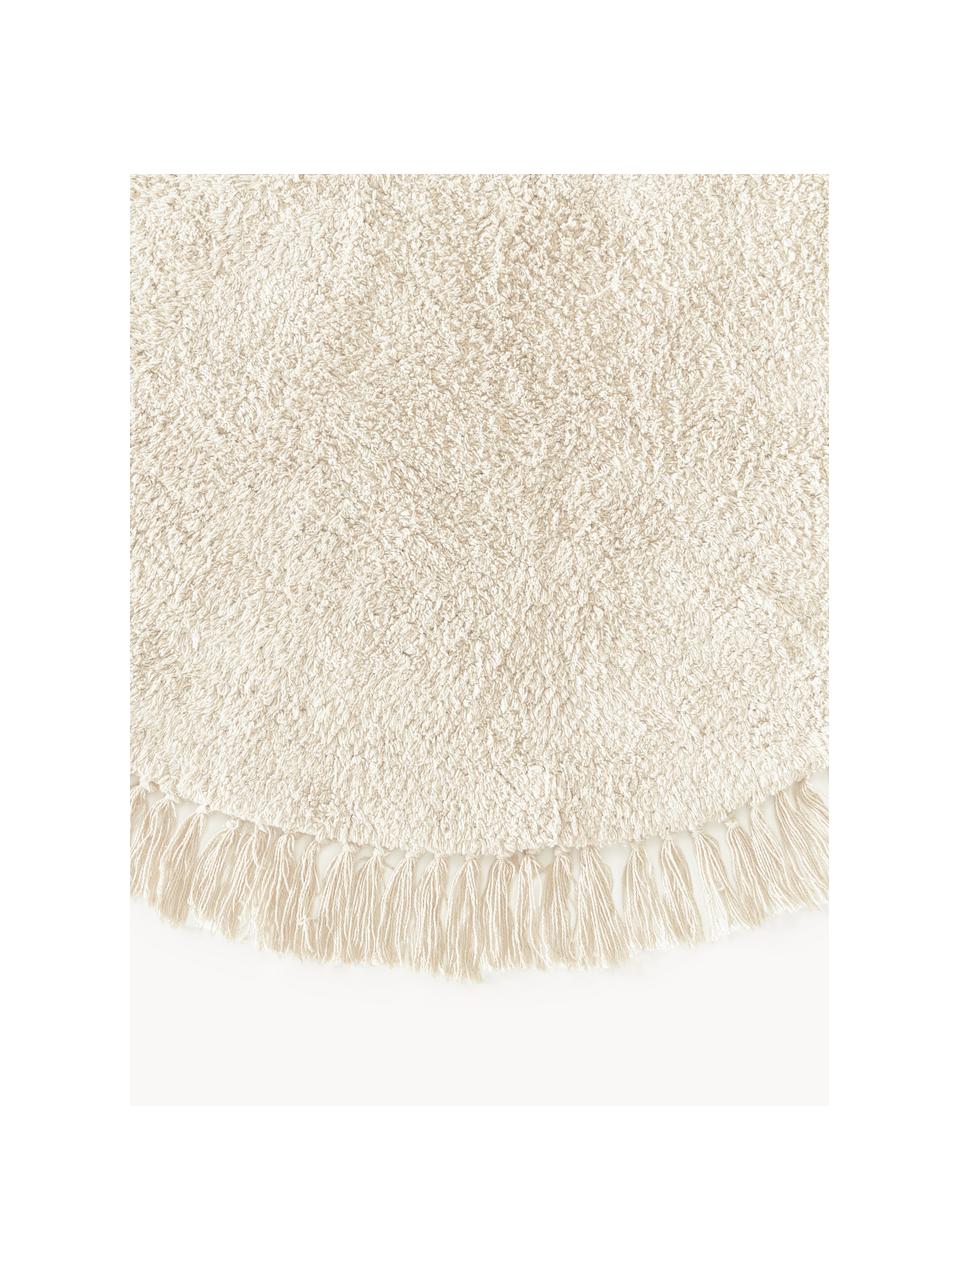 Runder Baumwollteppich Daya mit Fransen, handgetuftet, Flor: 100 % Baumwolle, Beige, Weiß, Ø 200 cm (Größe L)